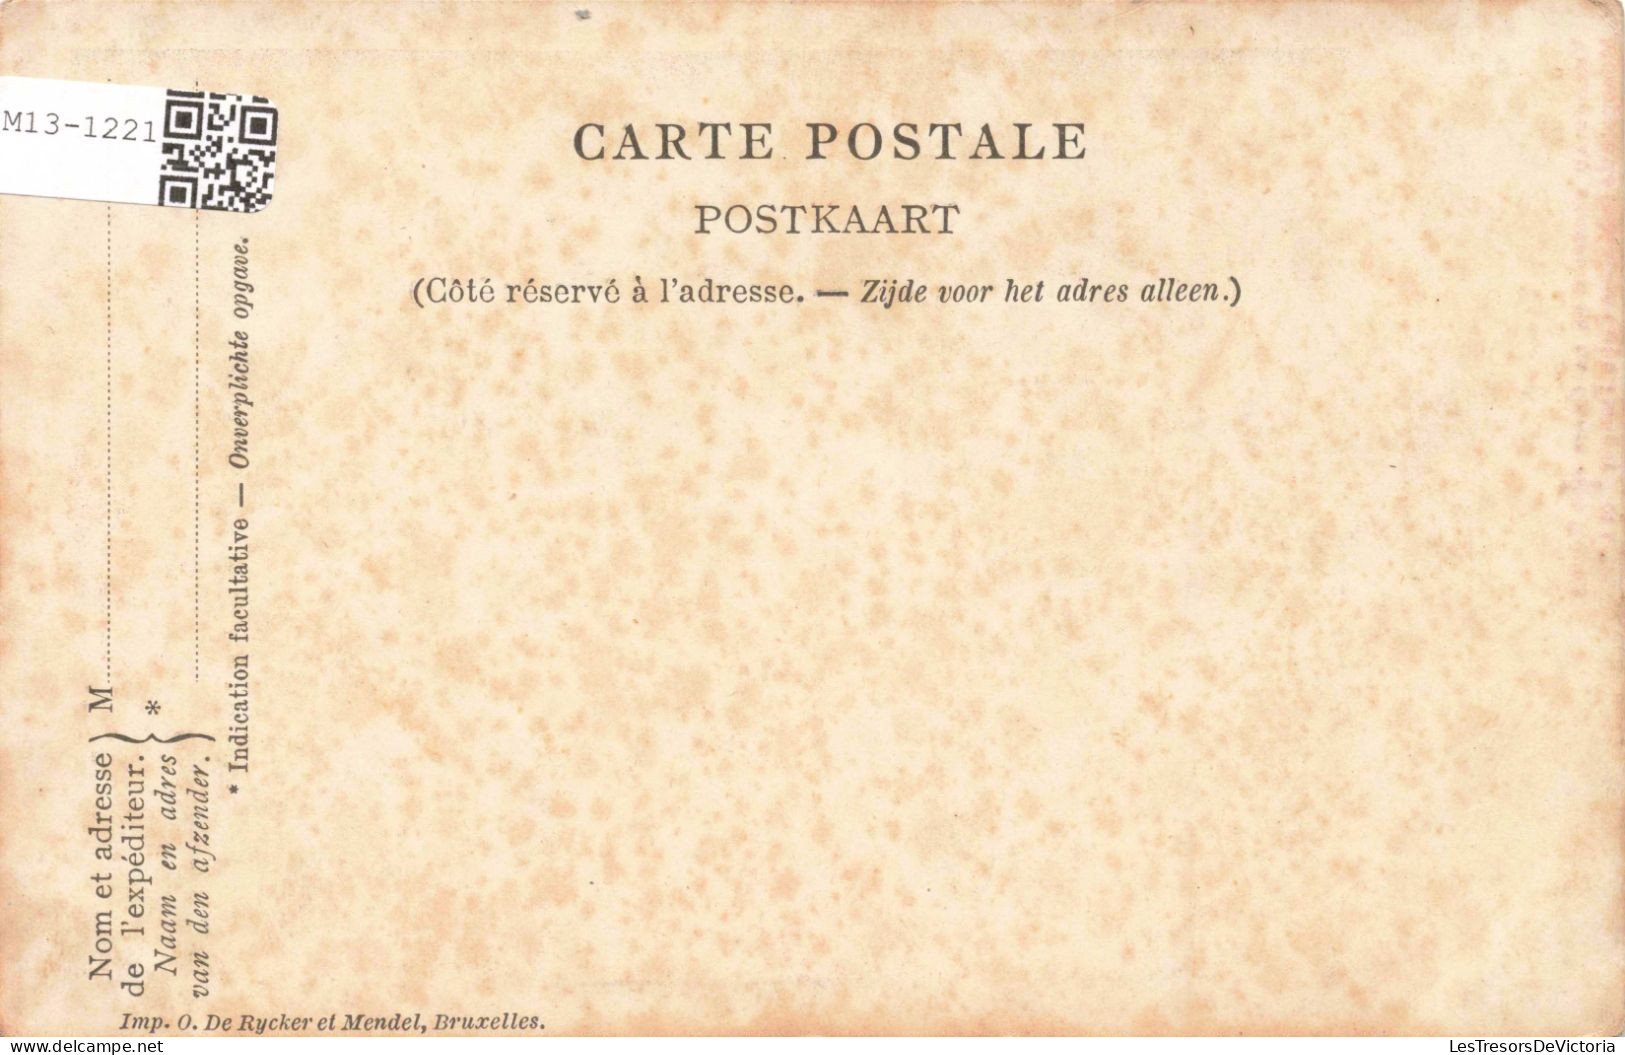 BELGIQUE - Bruxelles - Fêtes Jubilaires - Grand Cortège - Colorisé - Carte Postale Ancienne - Weltausstellungen